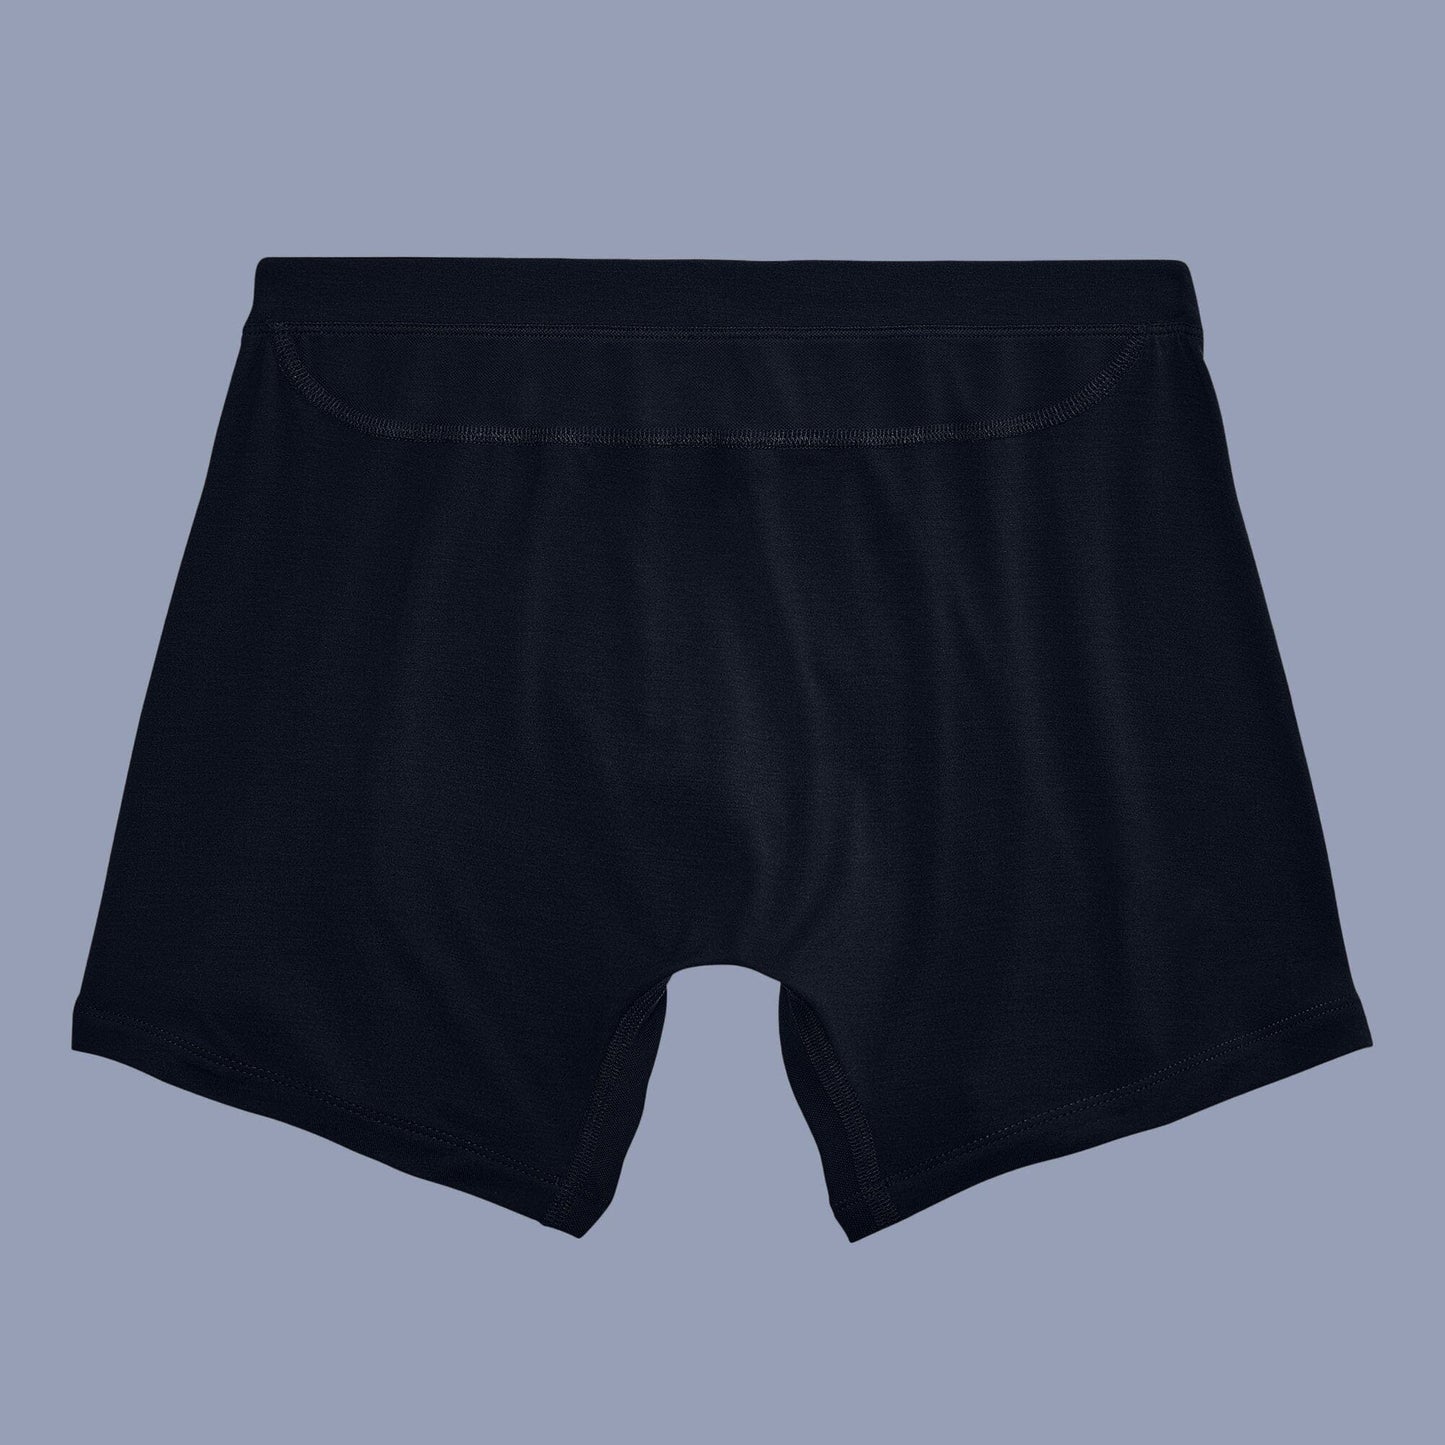 Polo Republica Essentials Men's Soft Mack Weldon Boxers Men's Underwear Polo Republica 